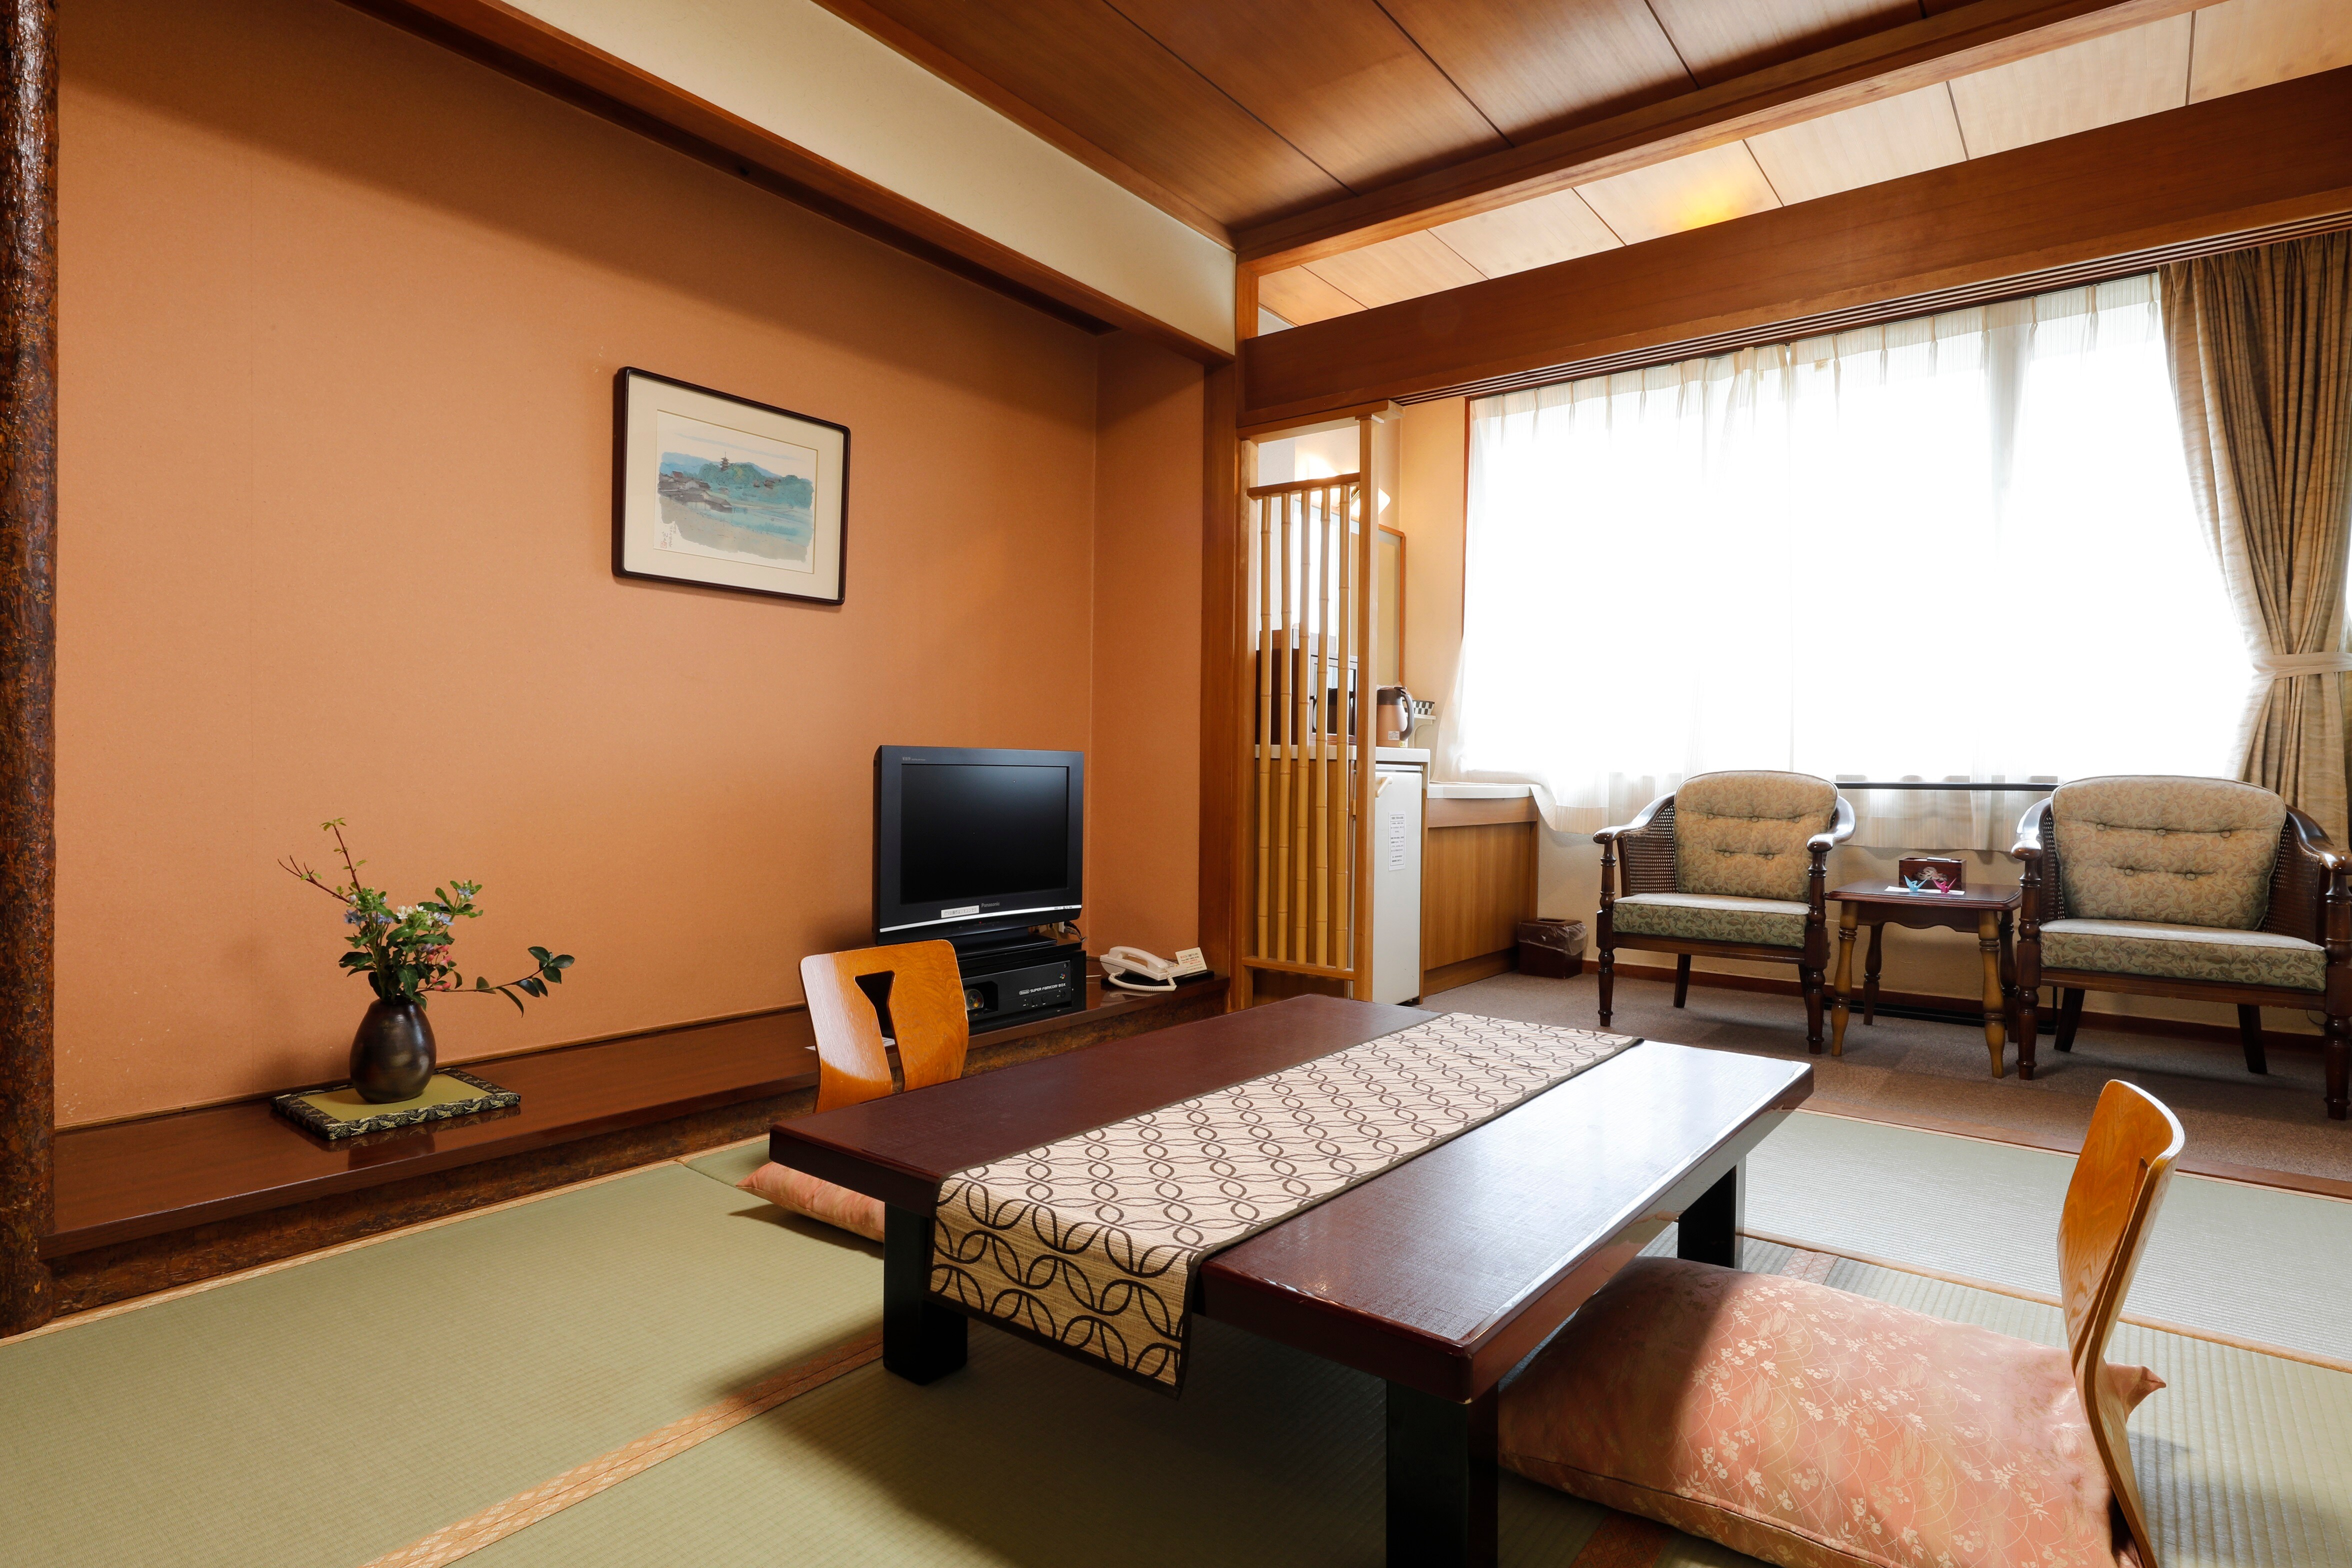 6张榻榻米的日式房间示例